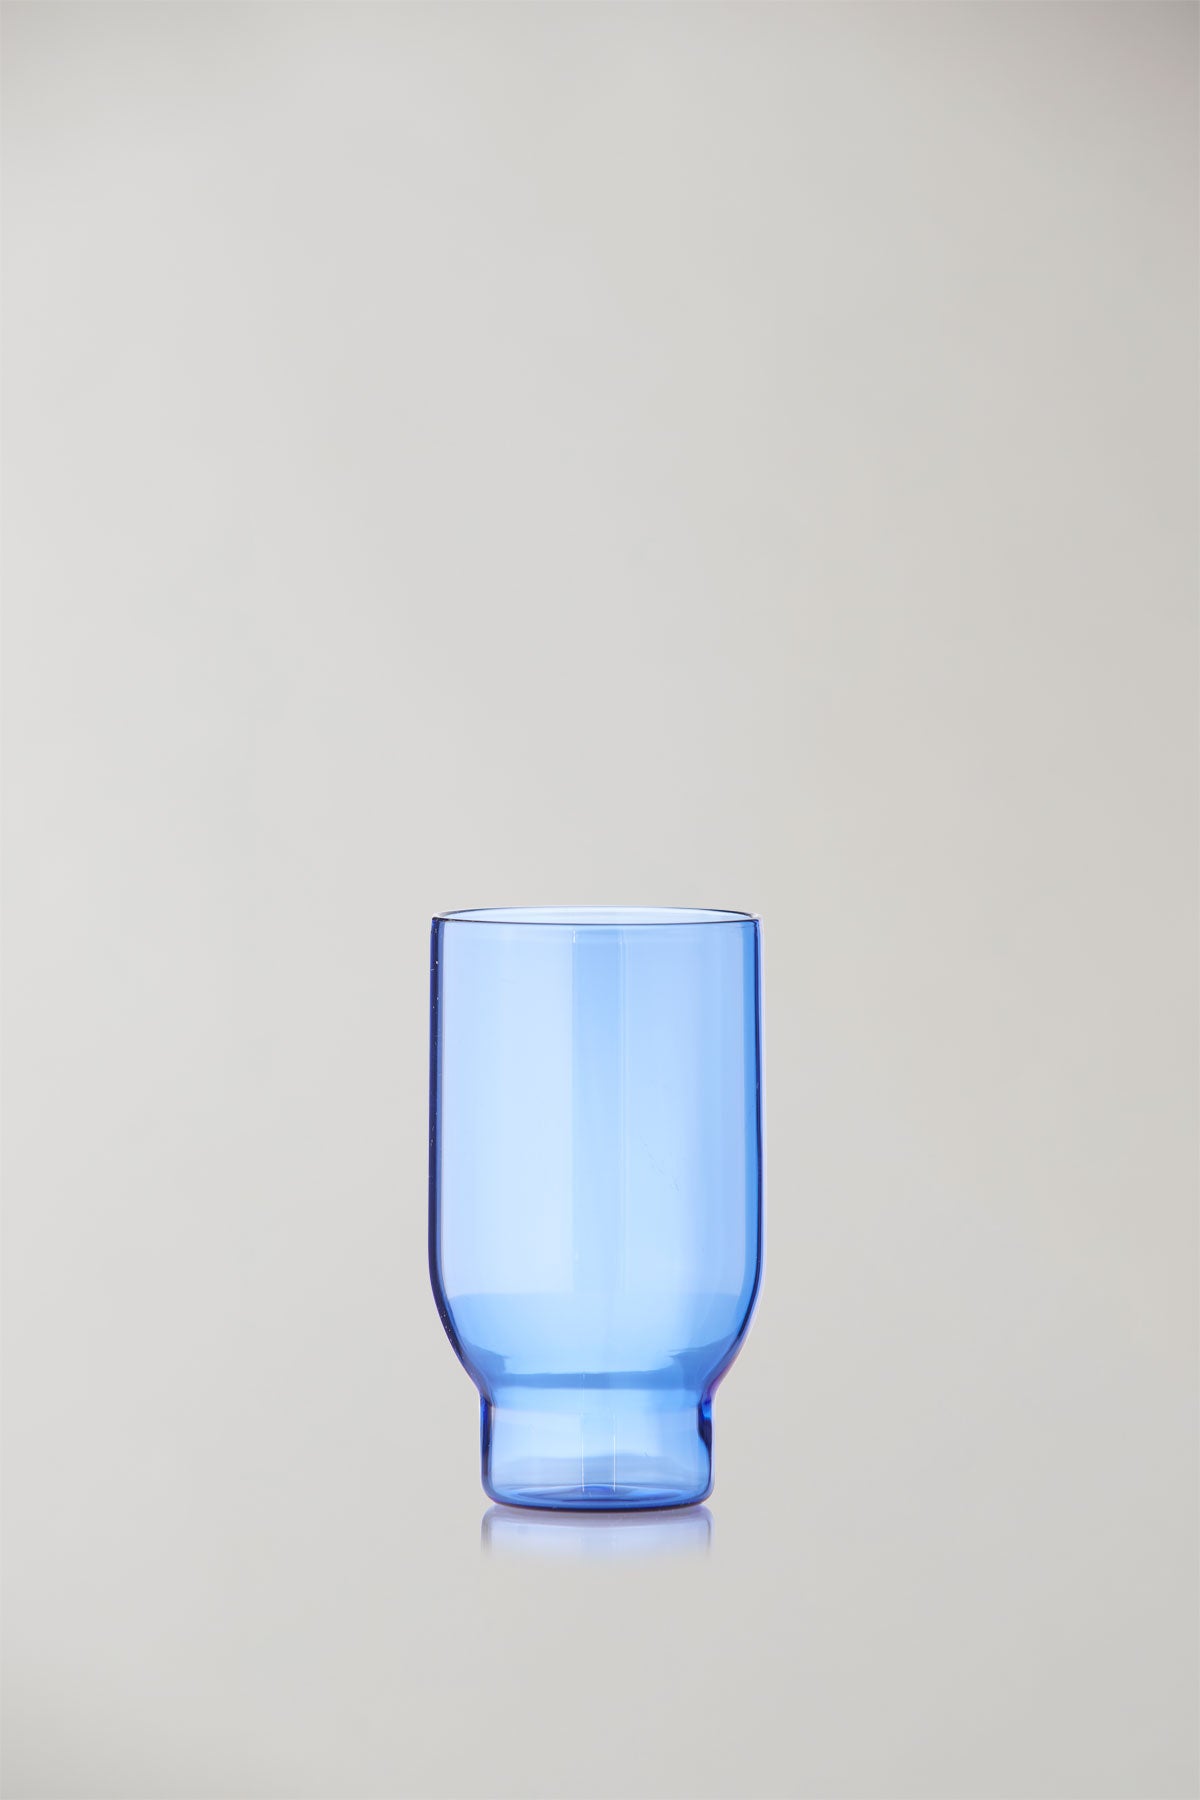 GLASWAREN,  WASSER GLAS, GROSS, 2 STÜCKE, BLAU